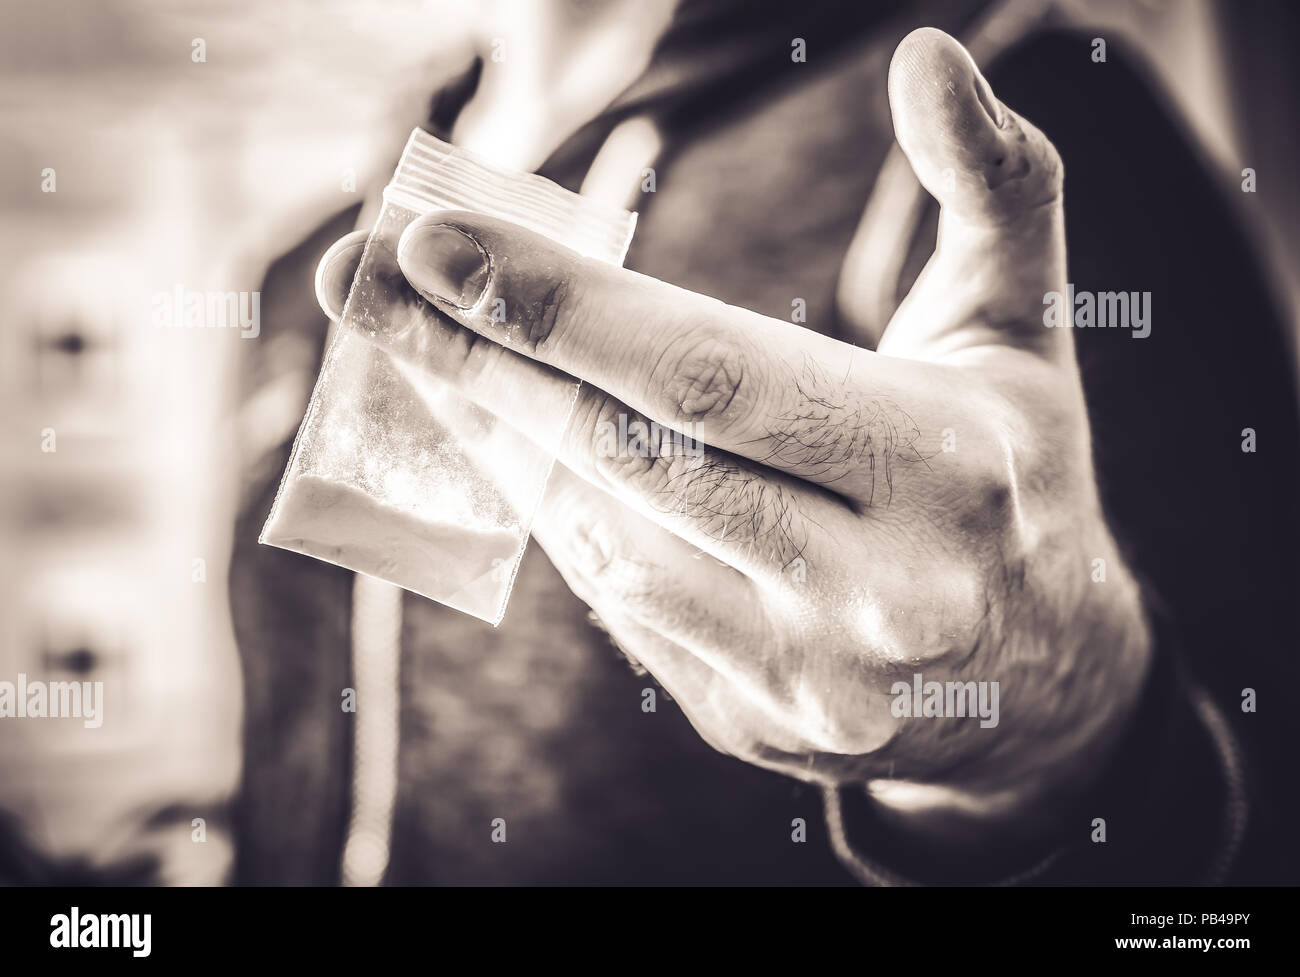 Behandlung illegaler Drogen von einem Mann mit einem kleinen Beutel mit weißem Pulver in seine Hand in monochromen Farben Stockfoto